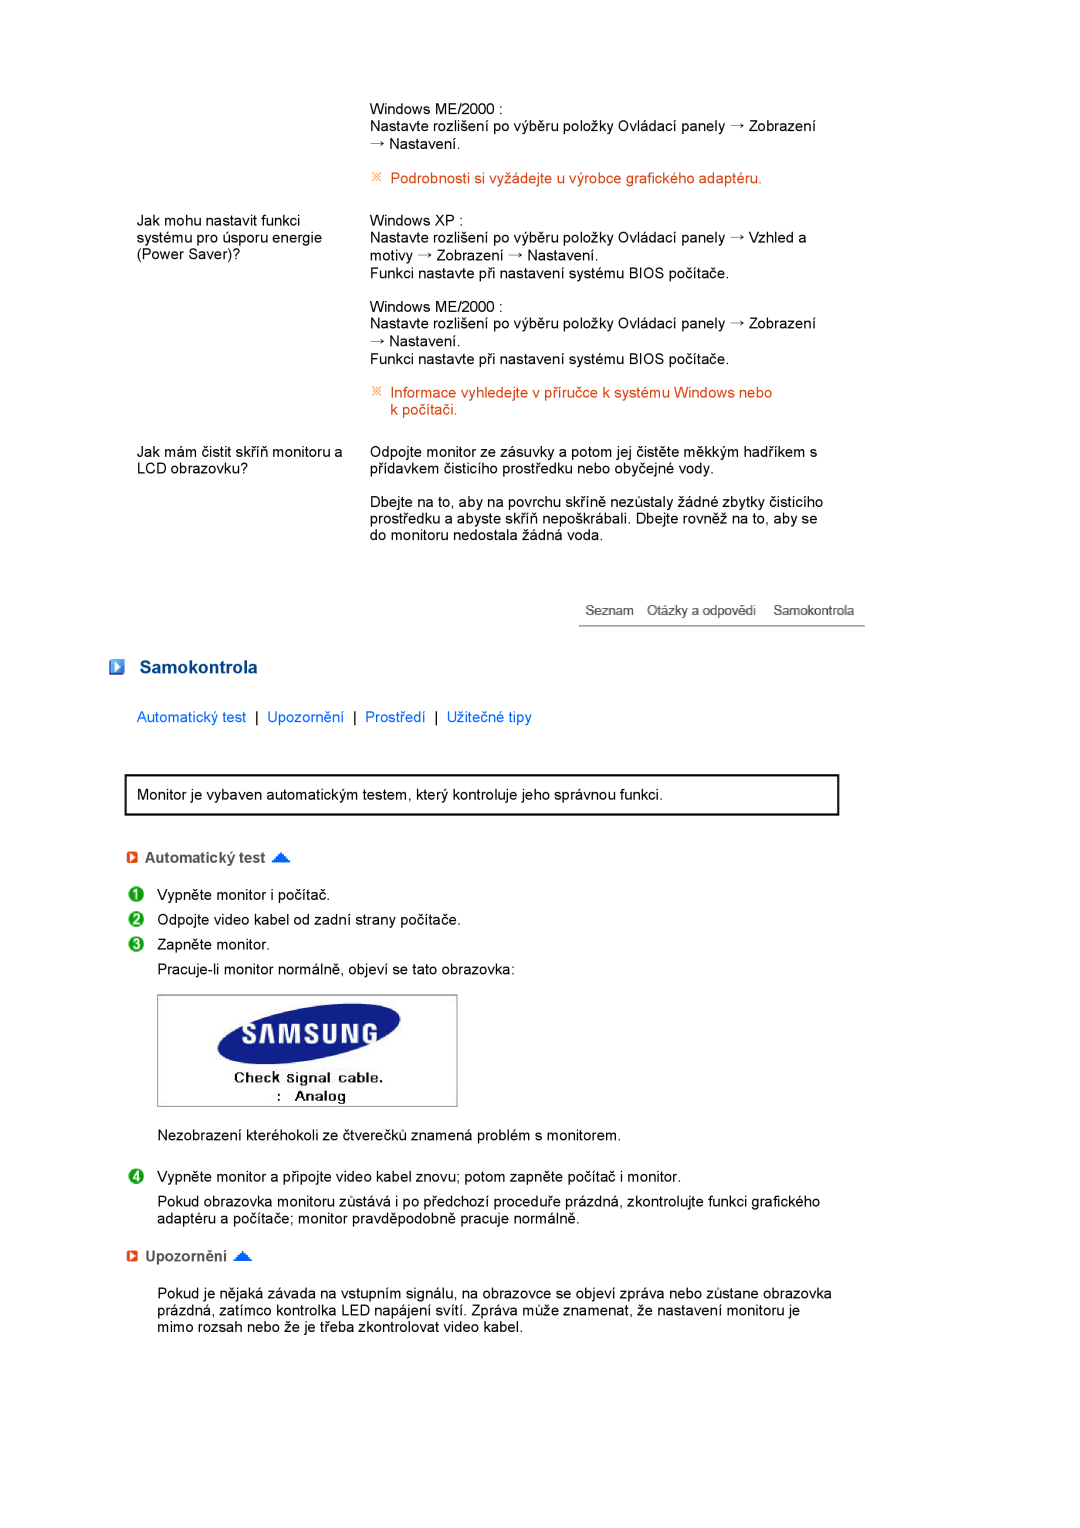 Samsung LS27HUBCB/EDC Samokontrola, Podrobnosti si vyžádejte u výrobce grafického adaptéru, Automatický test, Upozornění 